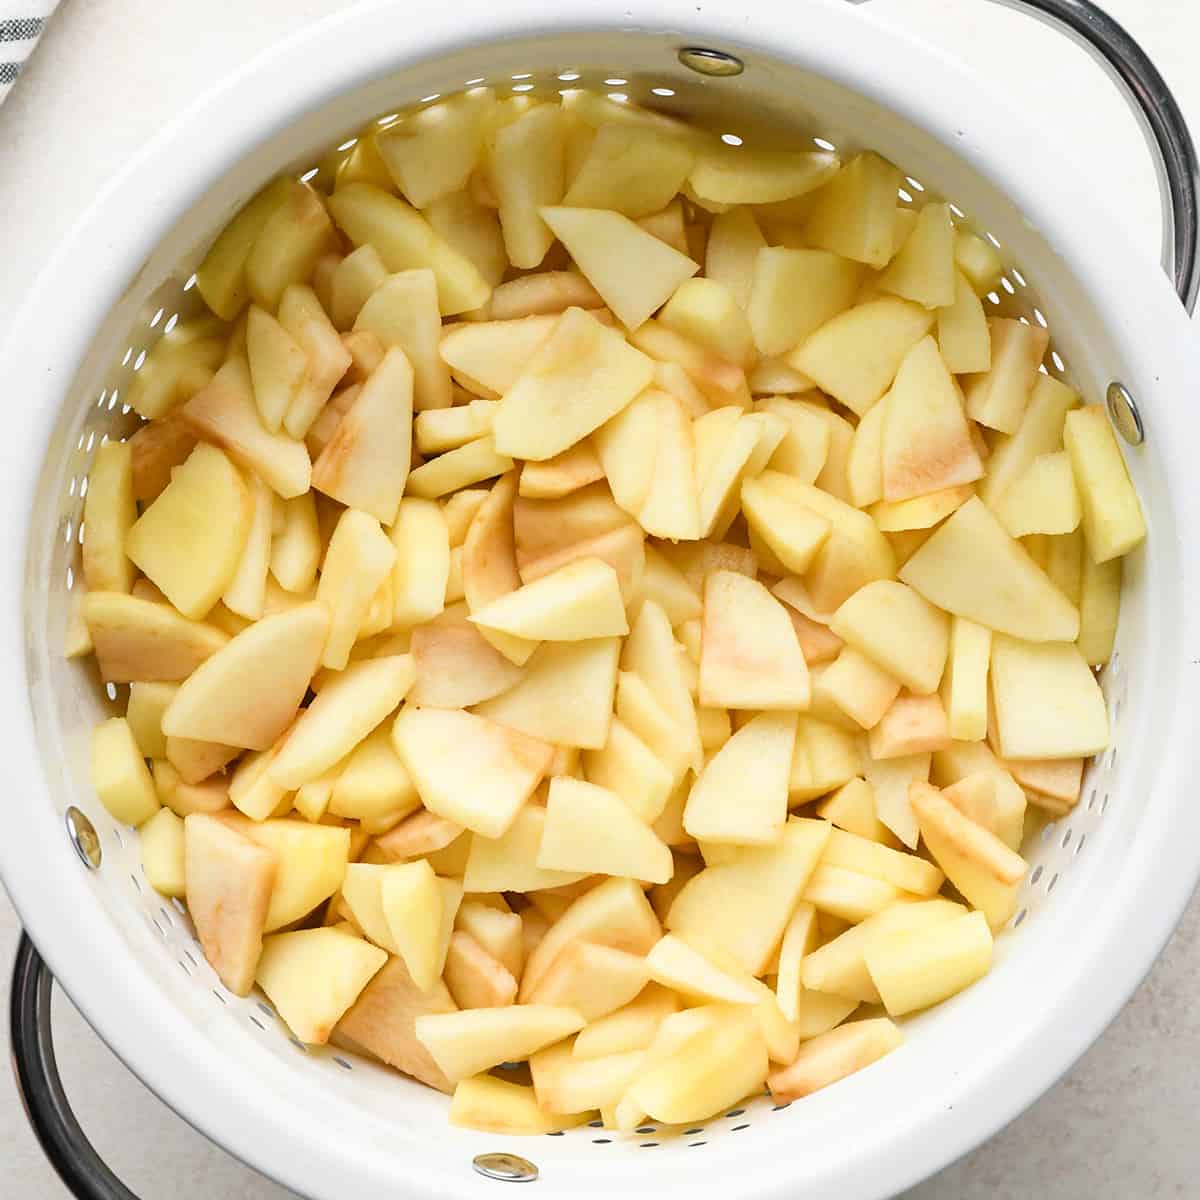 apple slices draining in a colander to make apple crisp